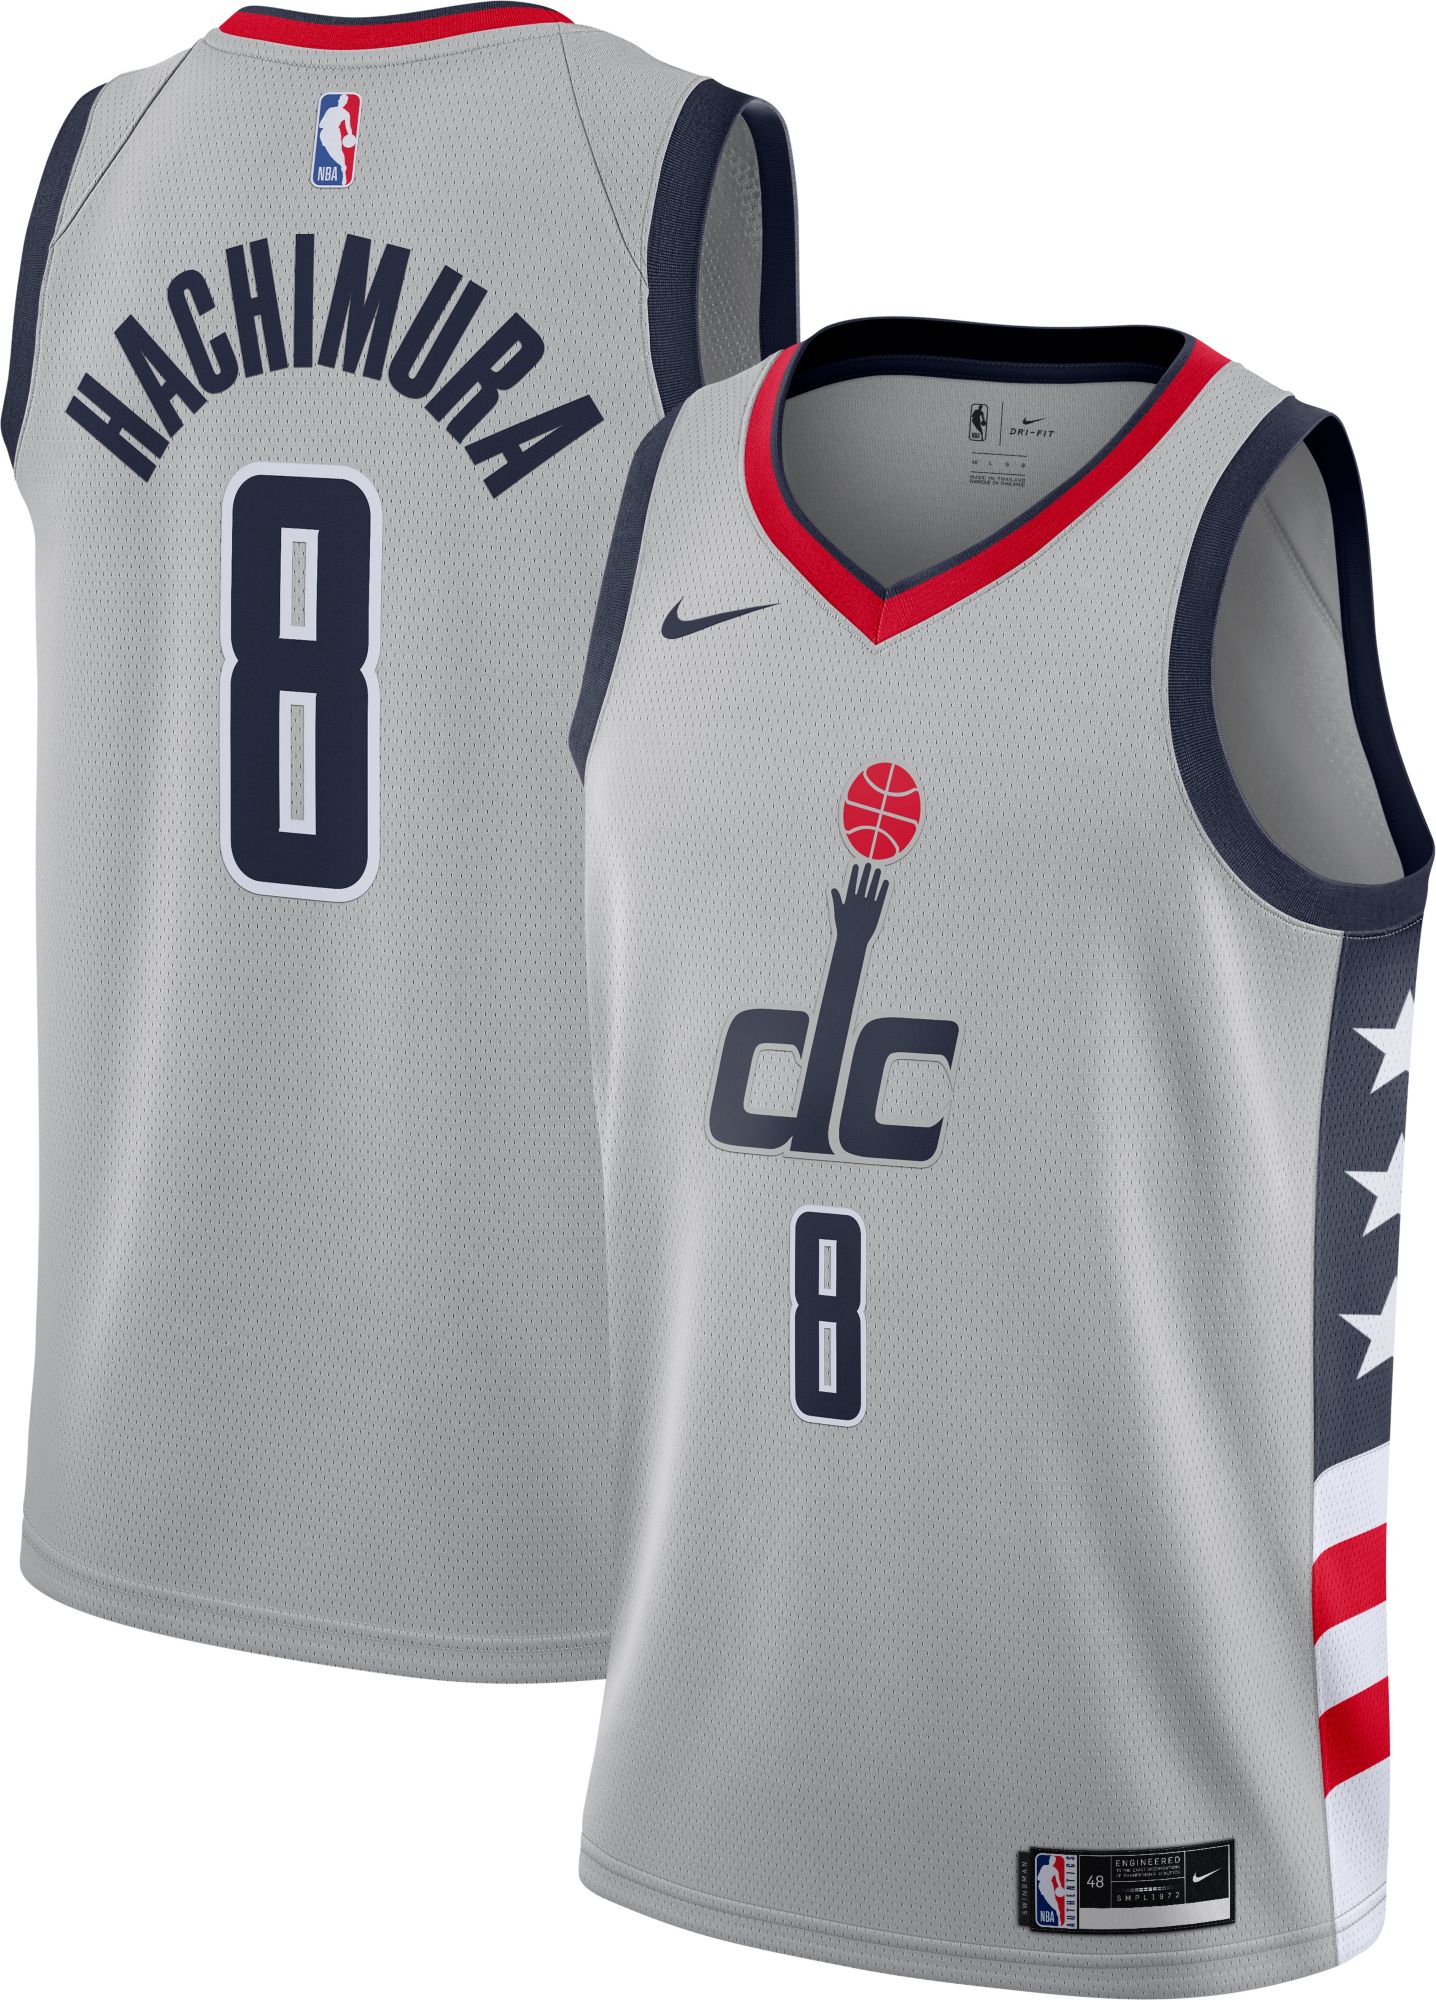 Washington Wizards Nike NBA Authentics Polo Women's White New L L